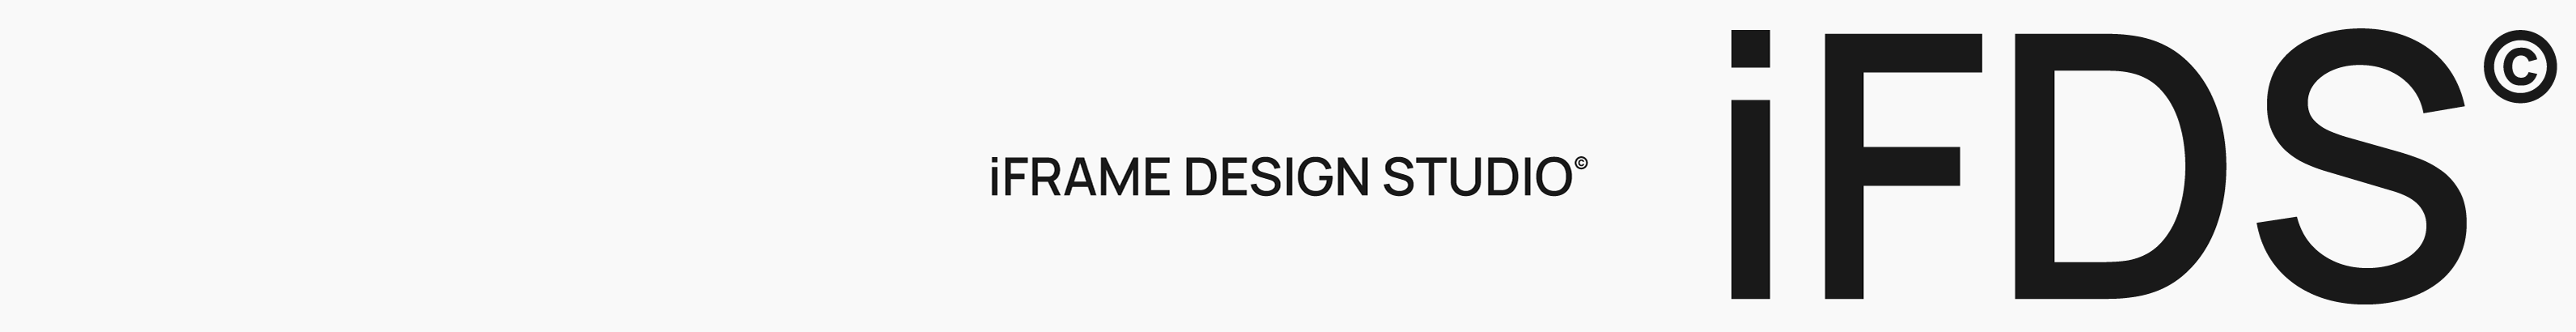 iframe design studio profil başlığı